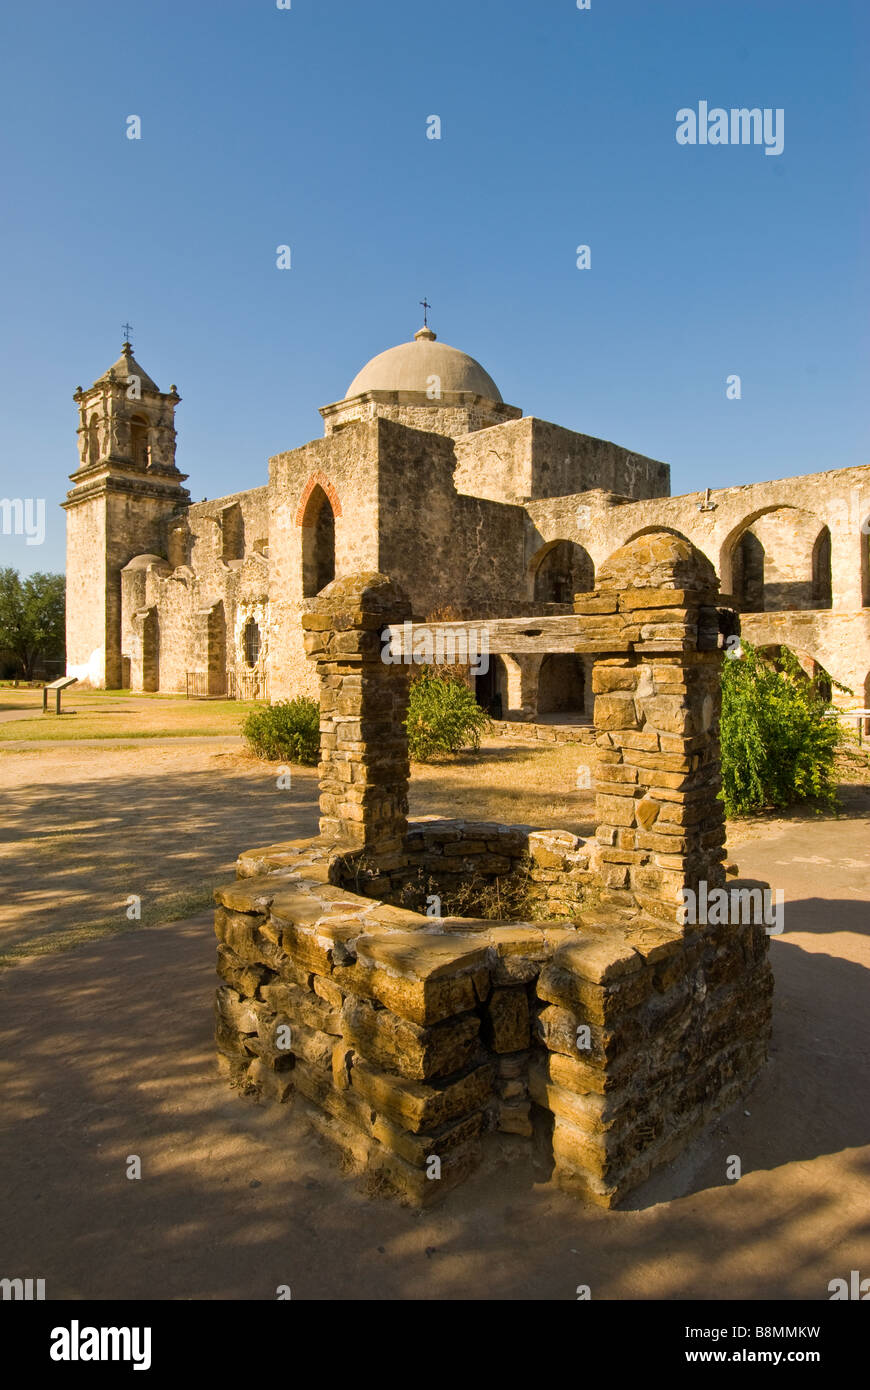 Mission San José San Antonio Texas tx attraction touristique de l'état national monument architecture coloniale espagnole building Banque D'Images